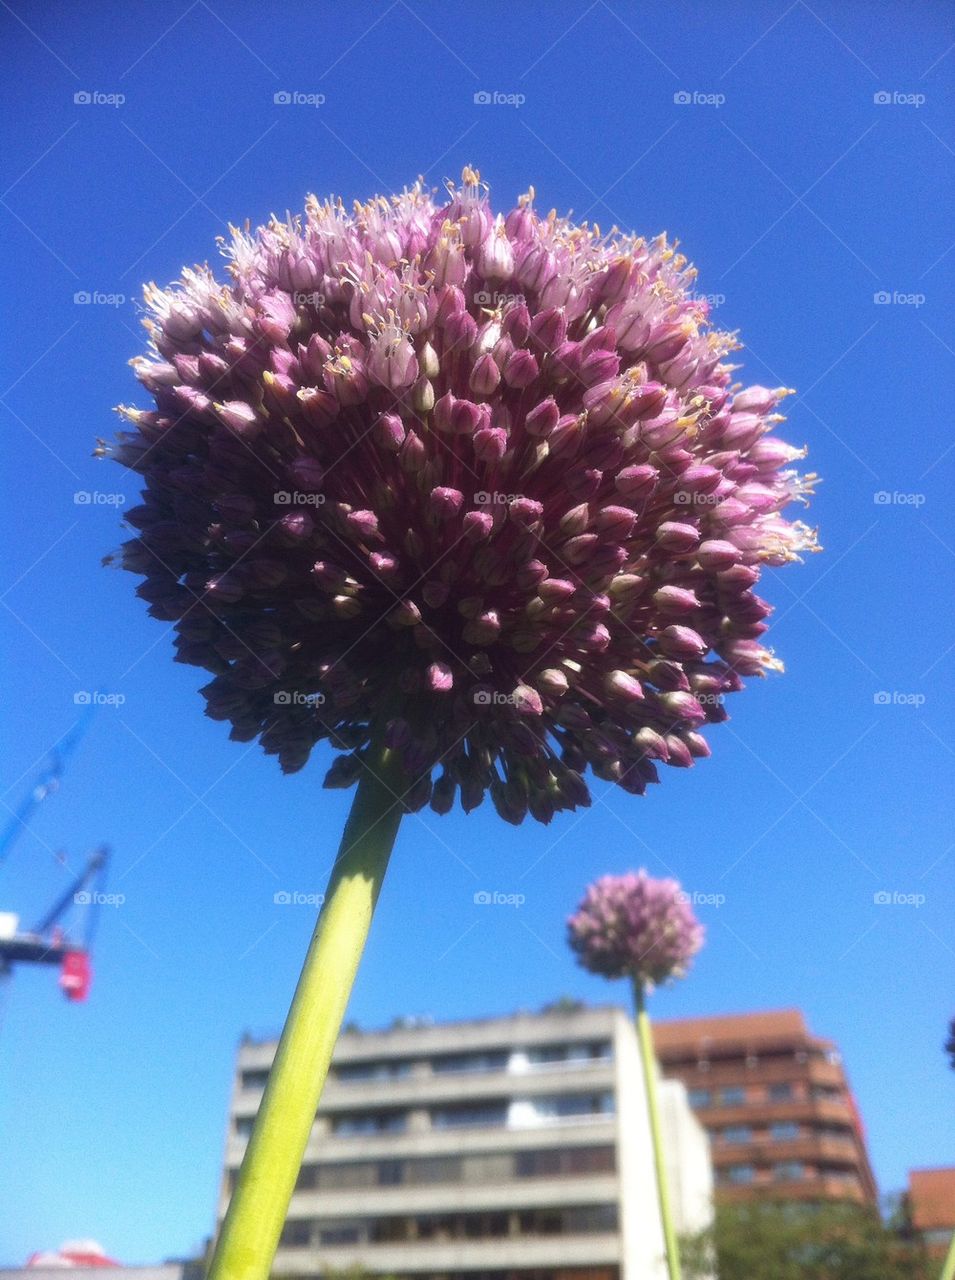 Allium flowers in the city